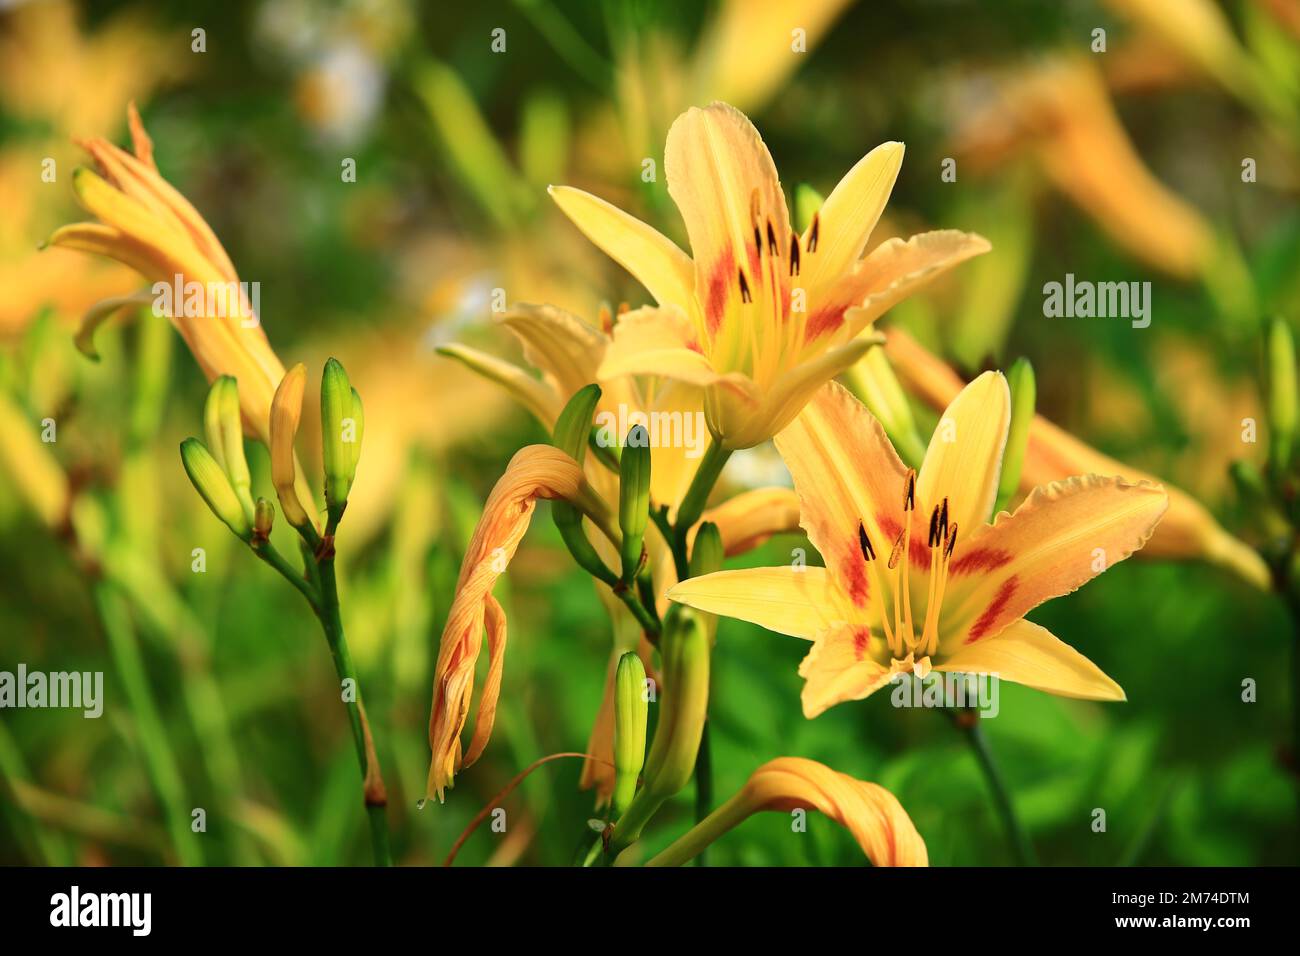 Giorno in fiore, Hemerocallis fulva, fiori di giorno arancione, primo piano di giallo con fiori di giorno arancione che fioriscono nella piantagione Foto Stock